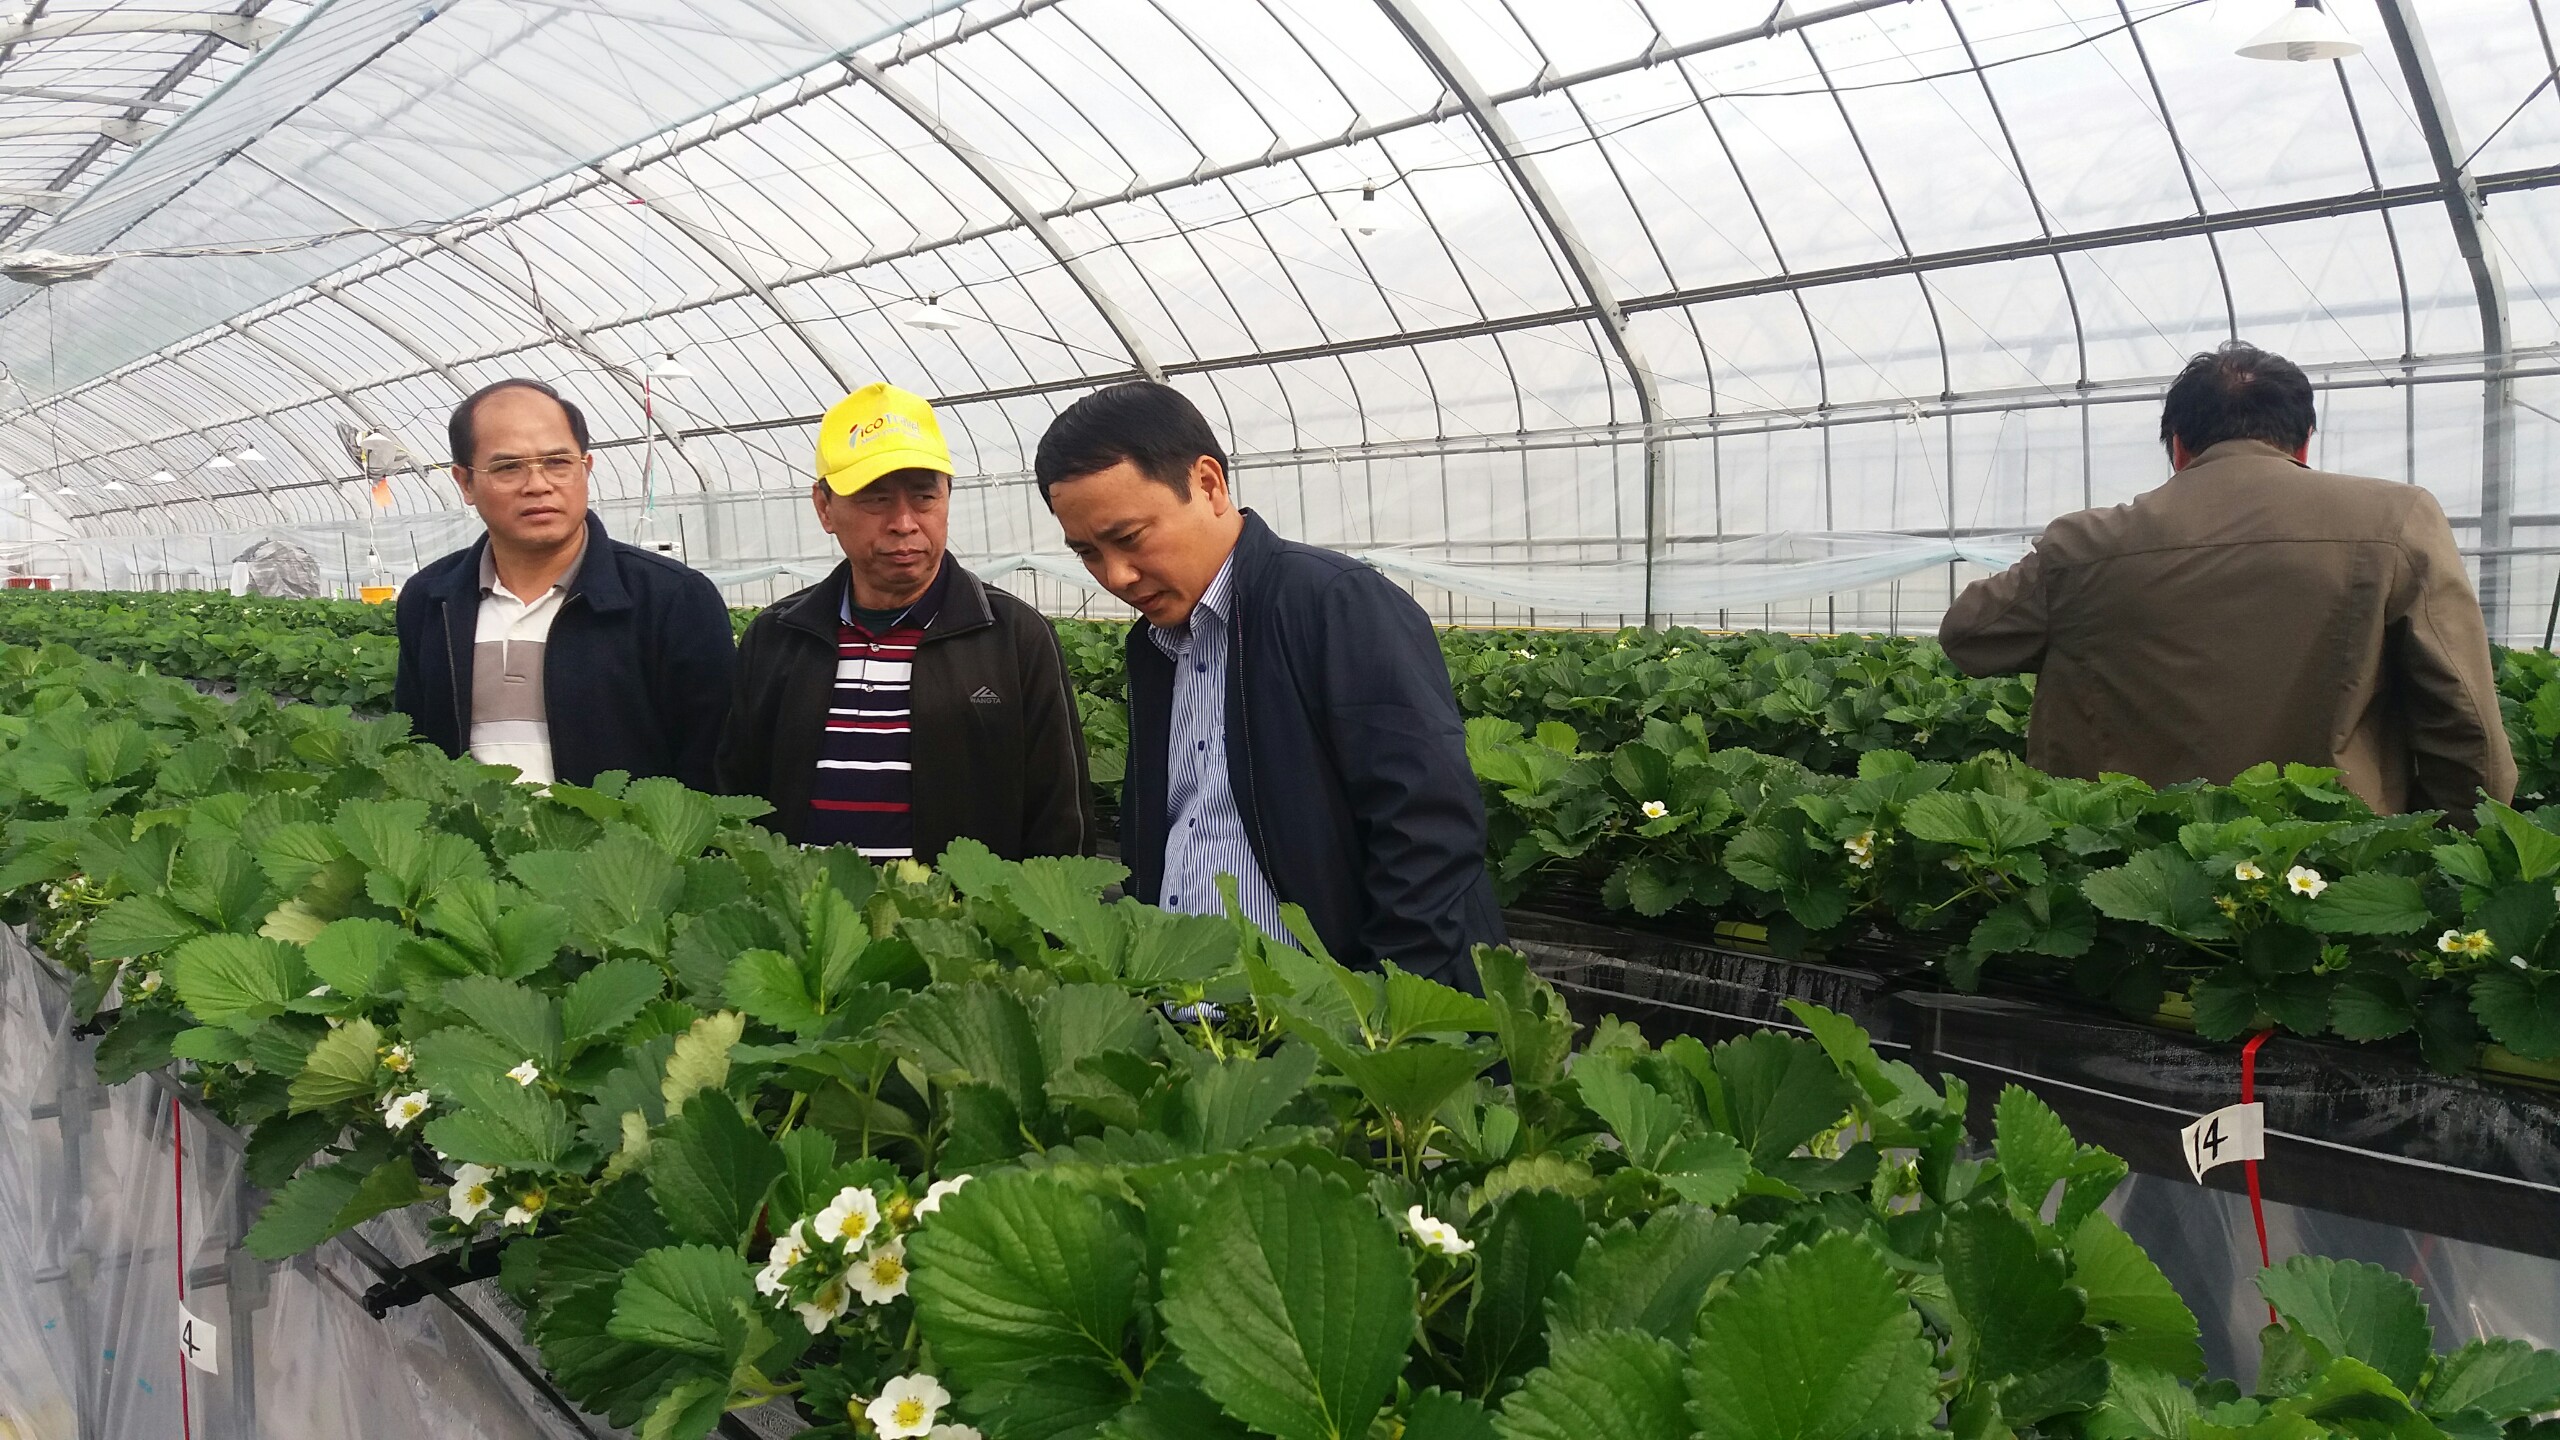 Đoàn cán bộ huyện Hiệp Hòa trao đổi kinh nghiệm sản xuất nông nghiệp công nghệ cao tại Nhật Bản